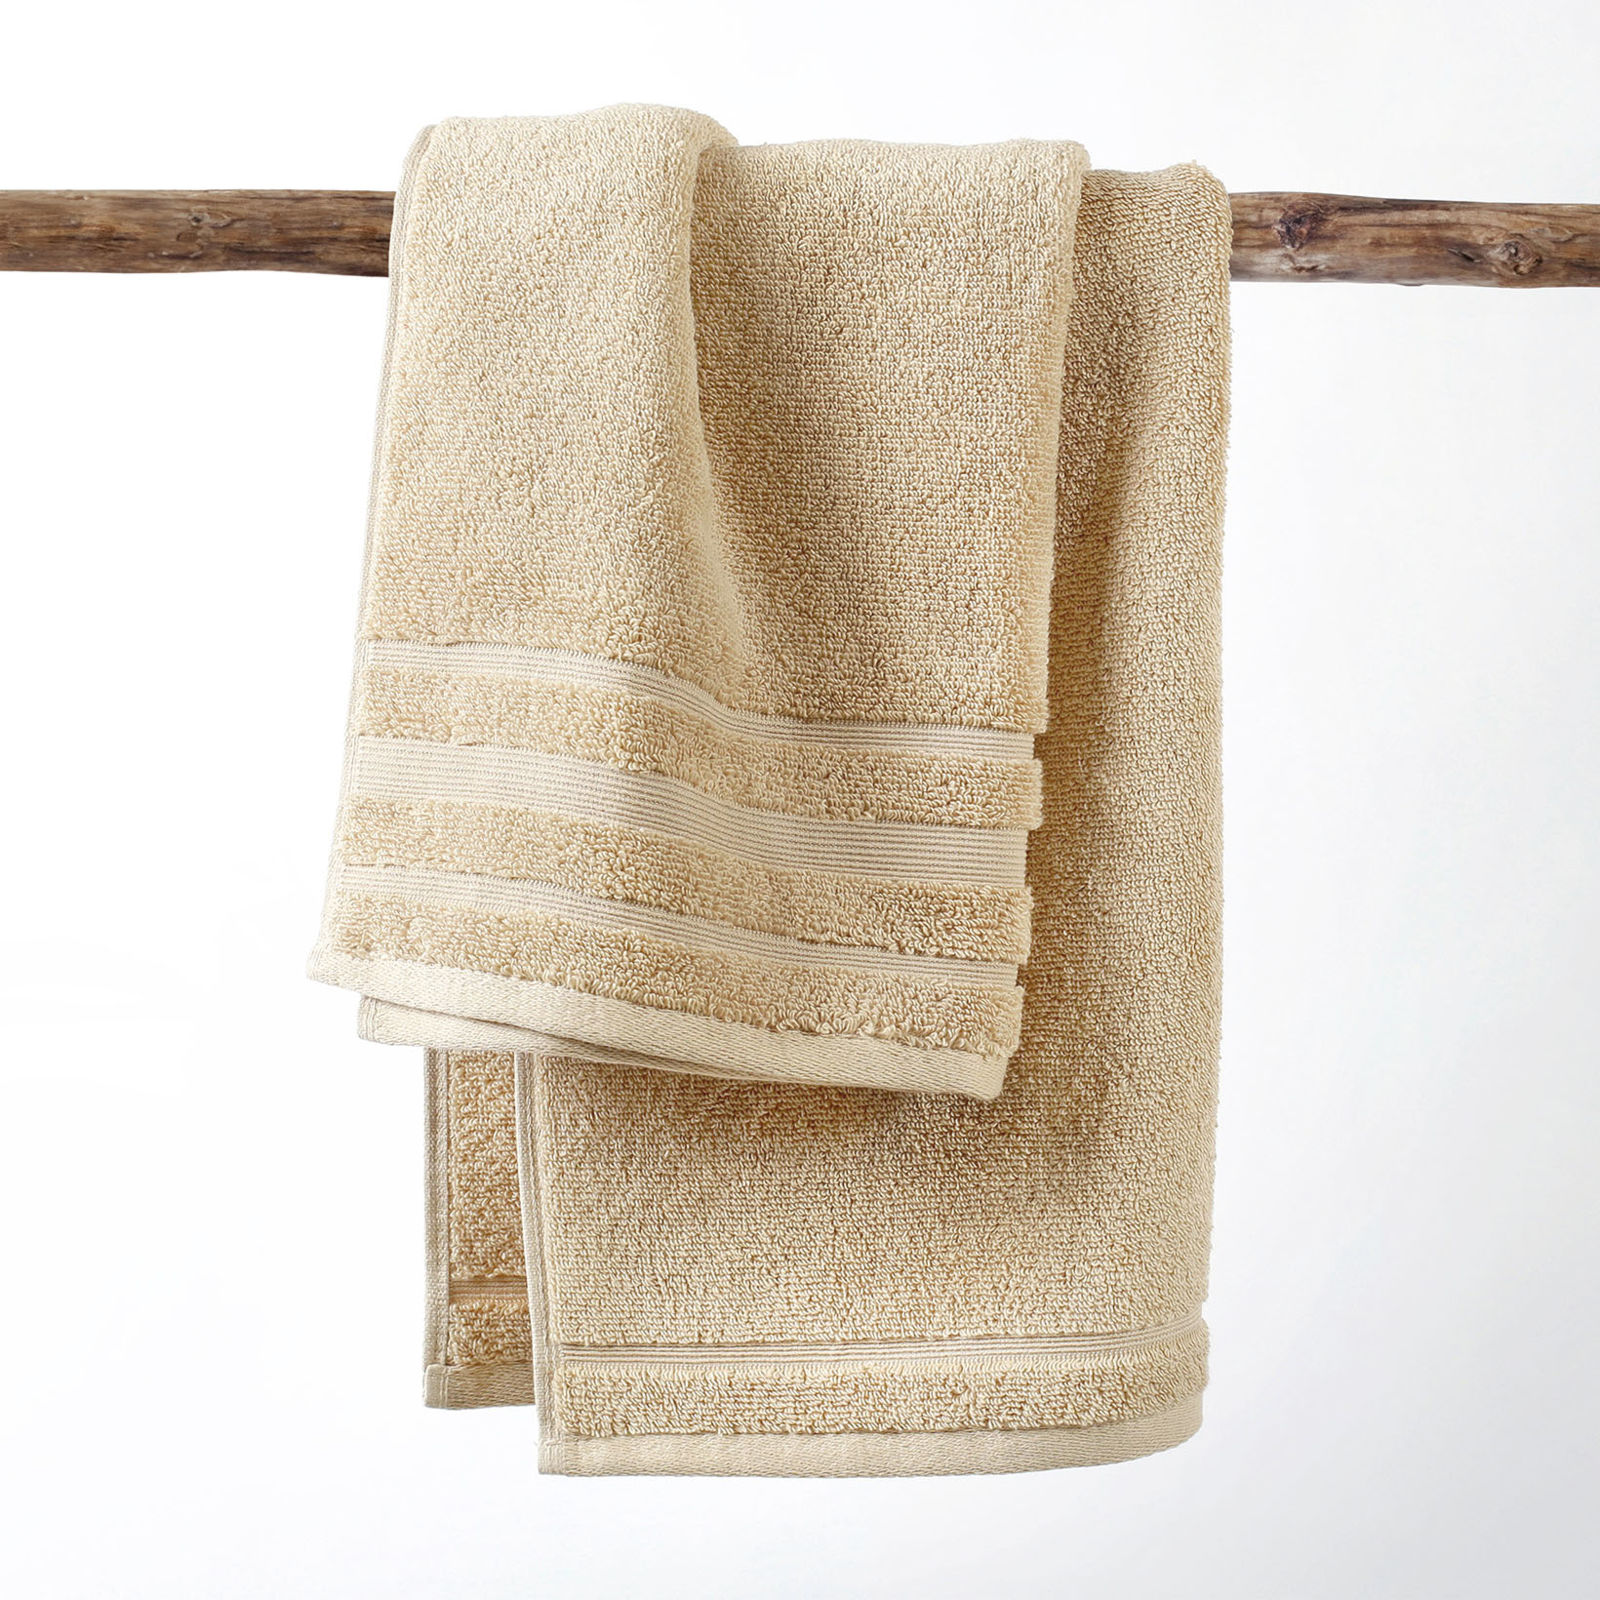 Hebký ručník z organické bavlny - béžový